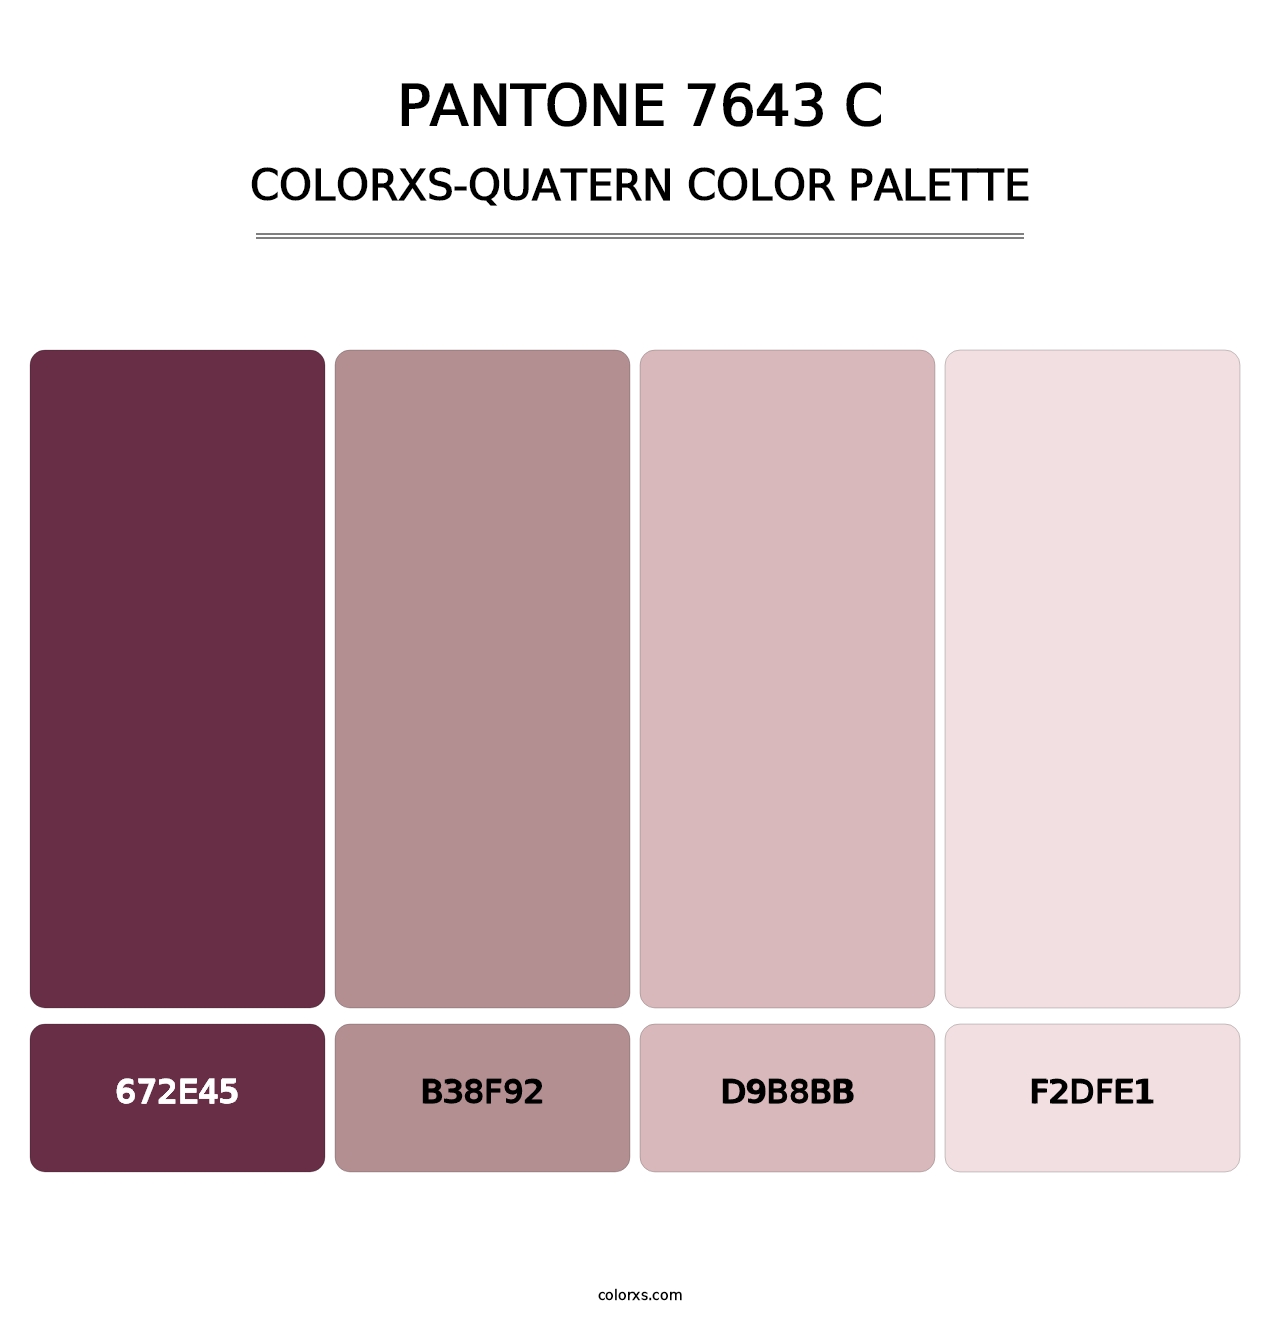 PANTONE 7643 C - Colorxs Quatern Palette